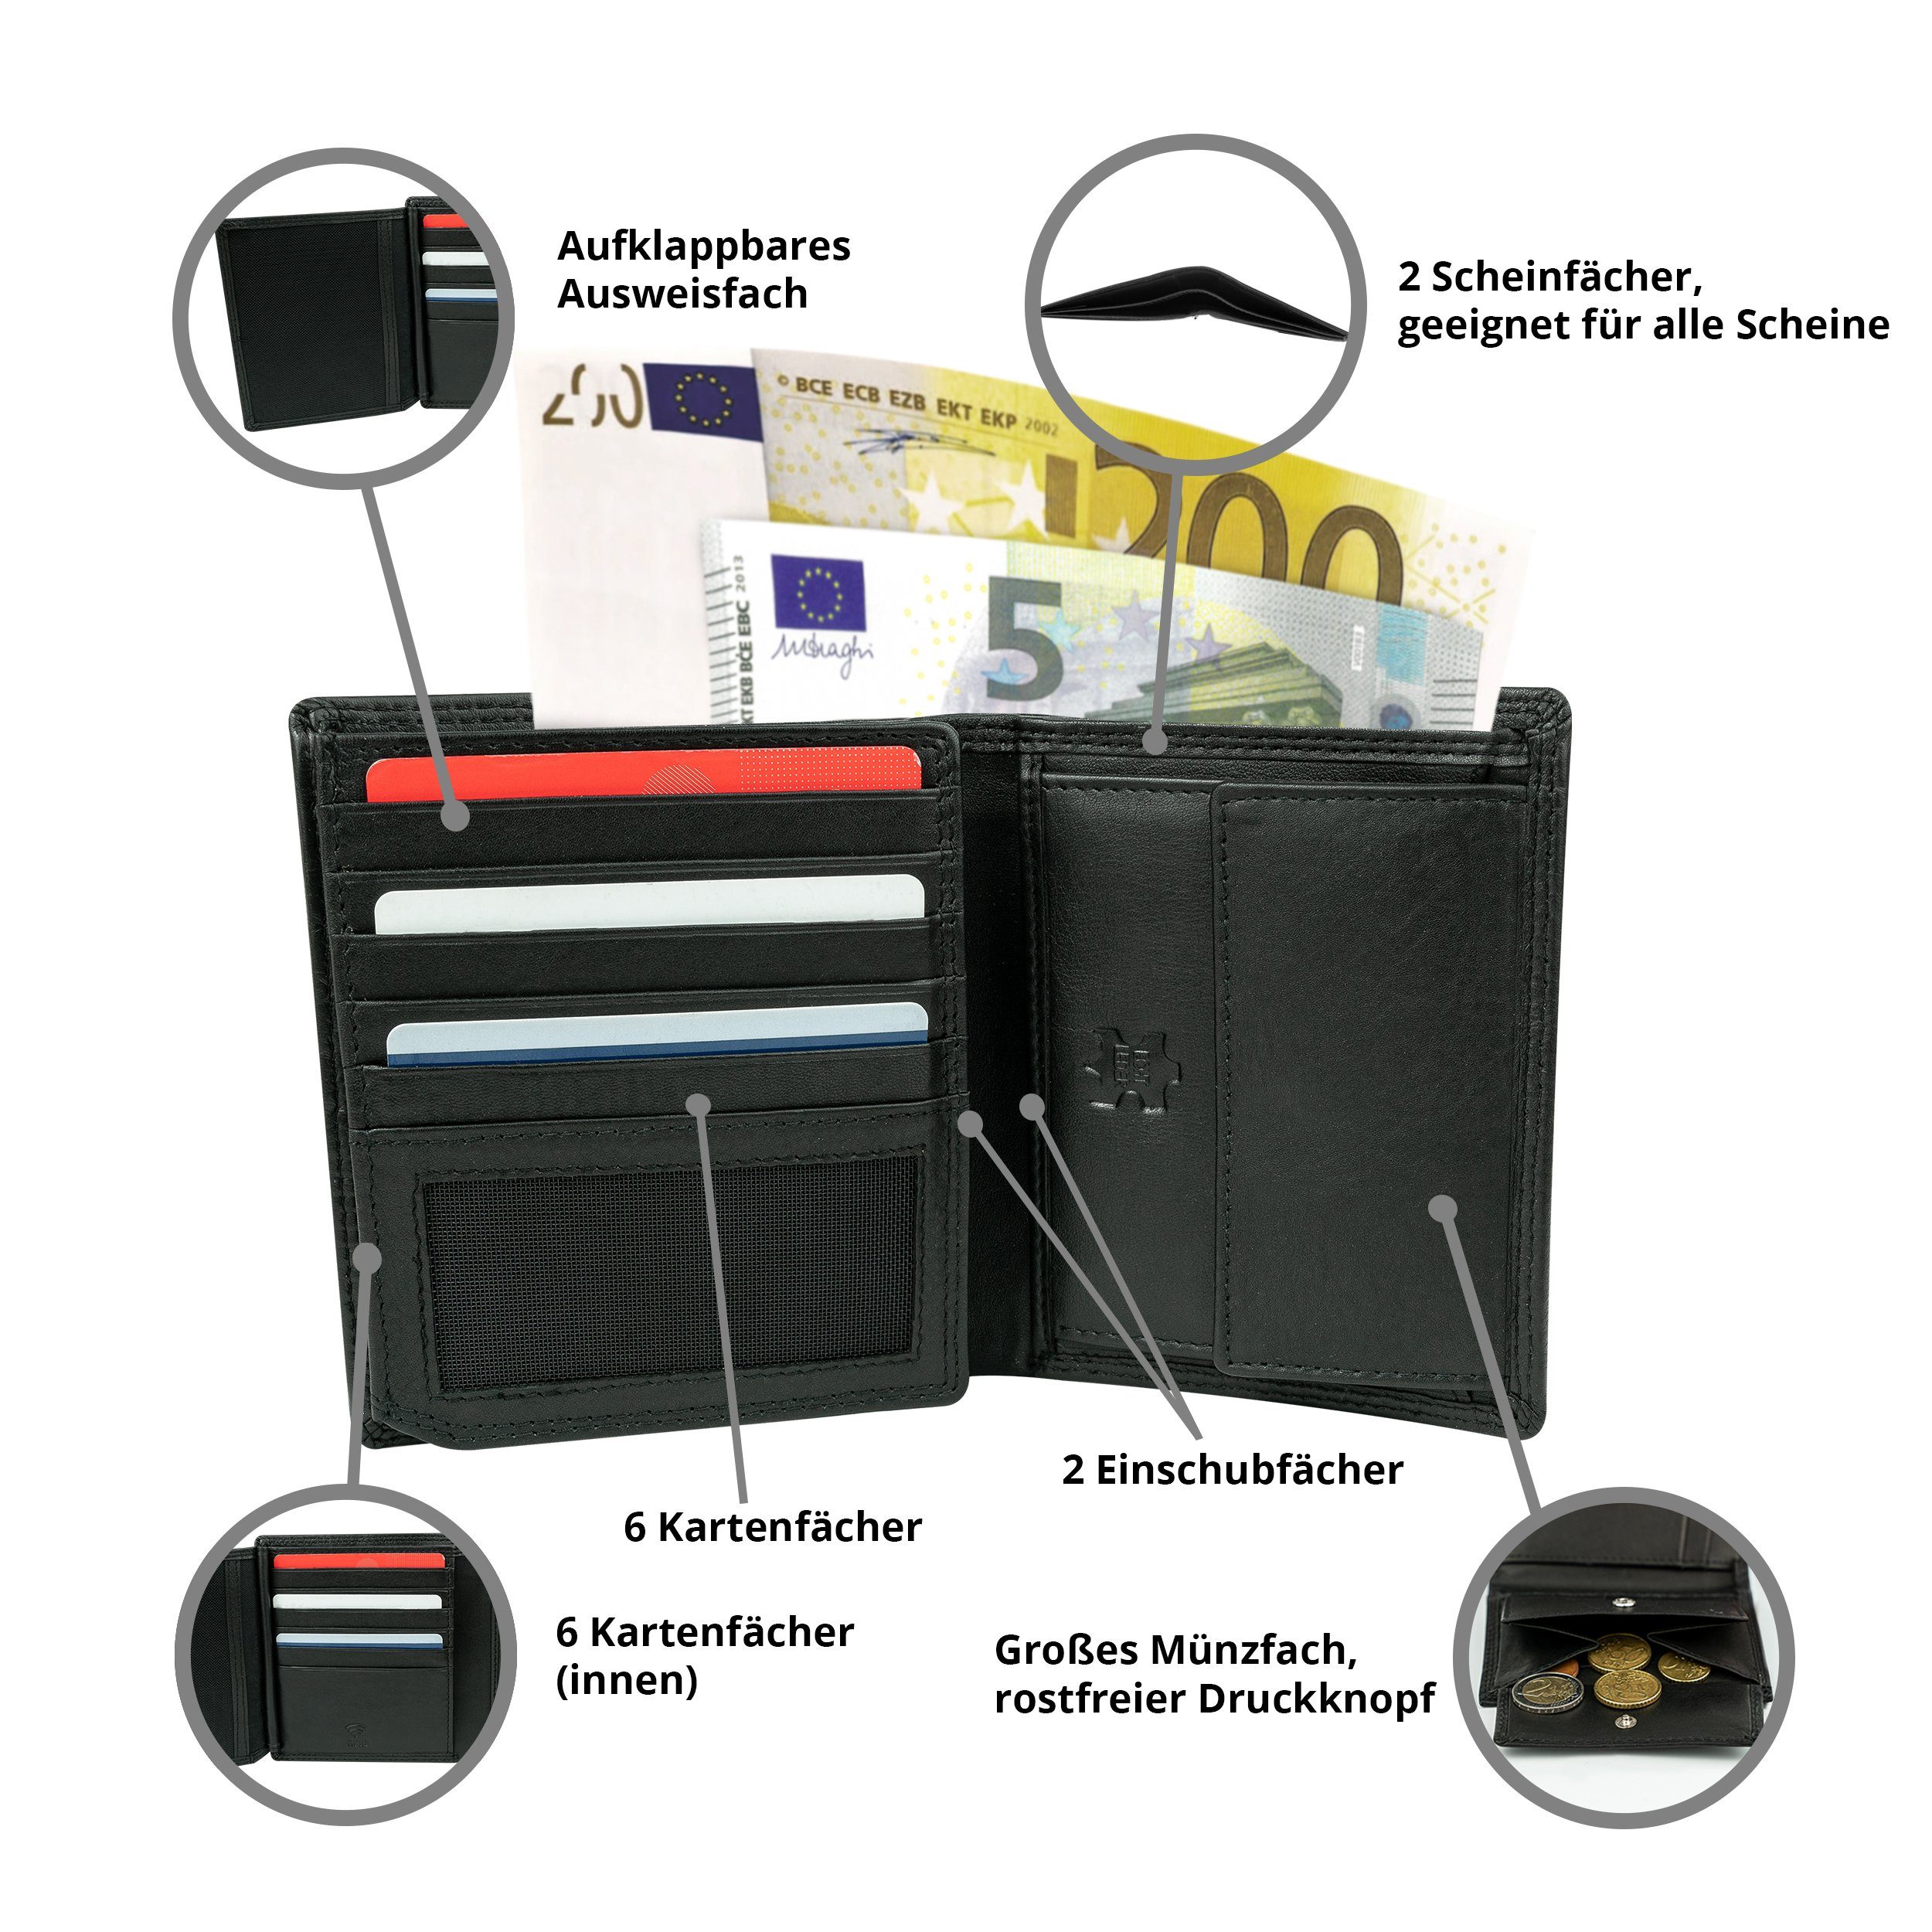 MOKIES Portemonnaie Premium Geschenkbox 100% RFID-/NFC-Schutz, Nappa-Leder, GN105 (hochformat), Nappa Geldbörse Premium Herren Echt-Leder,